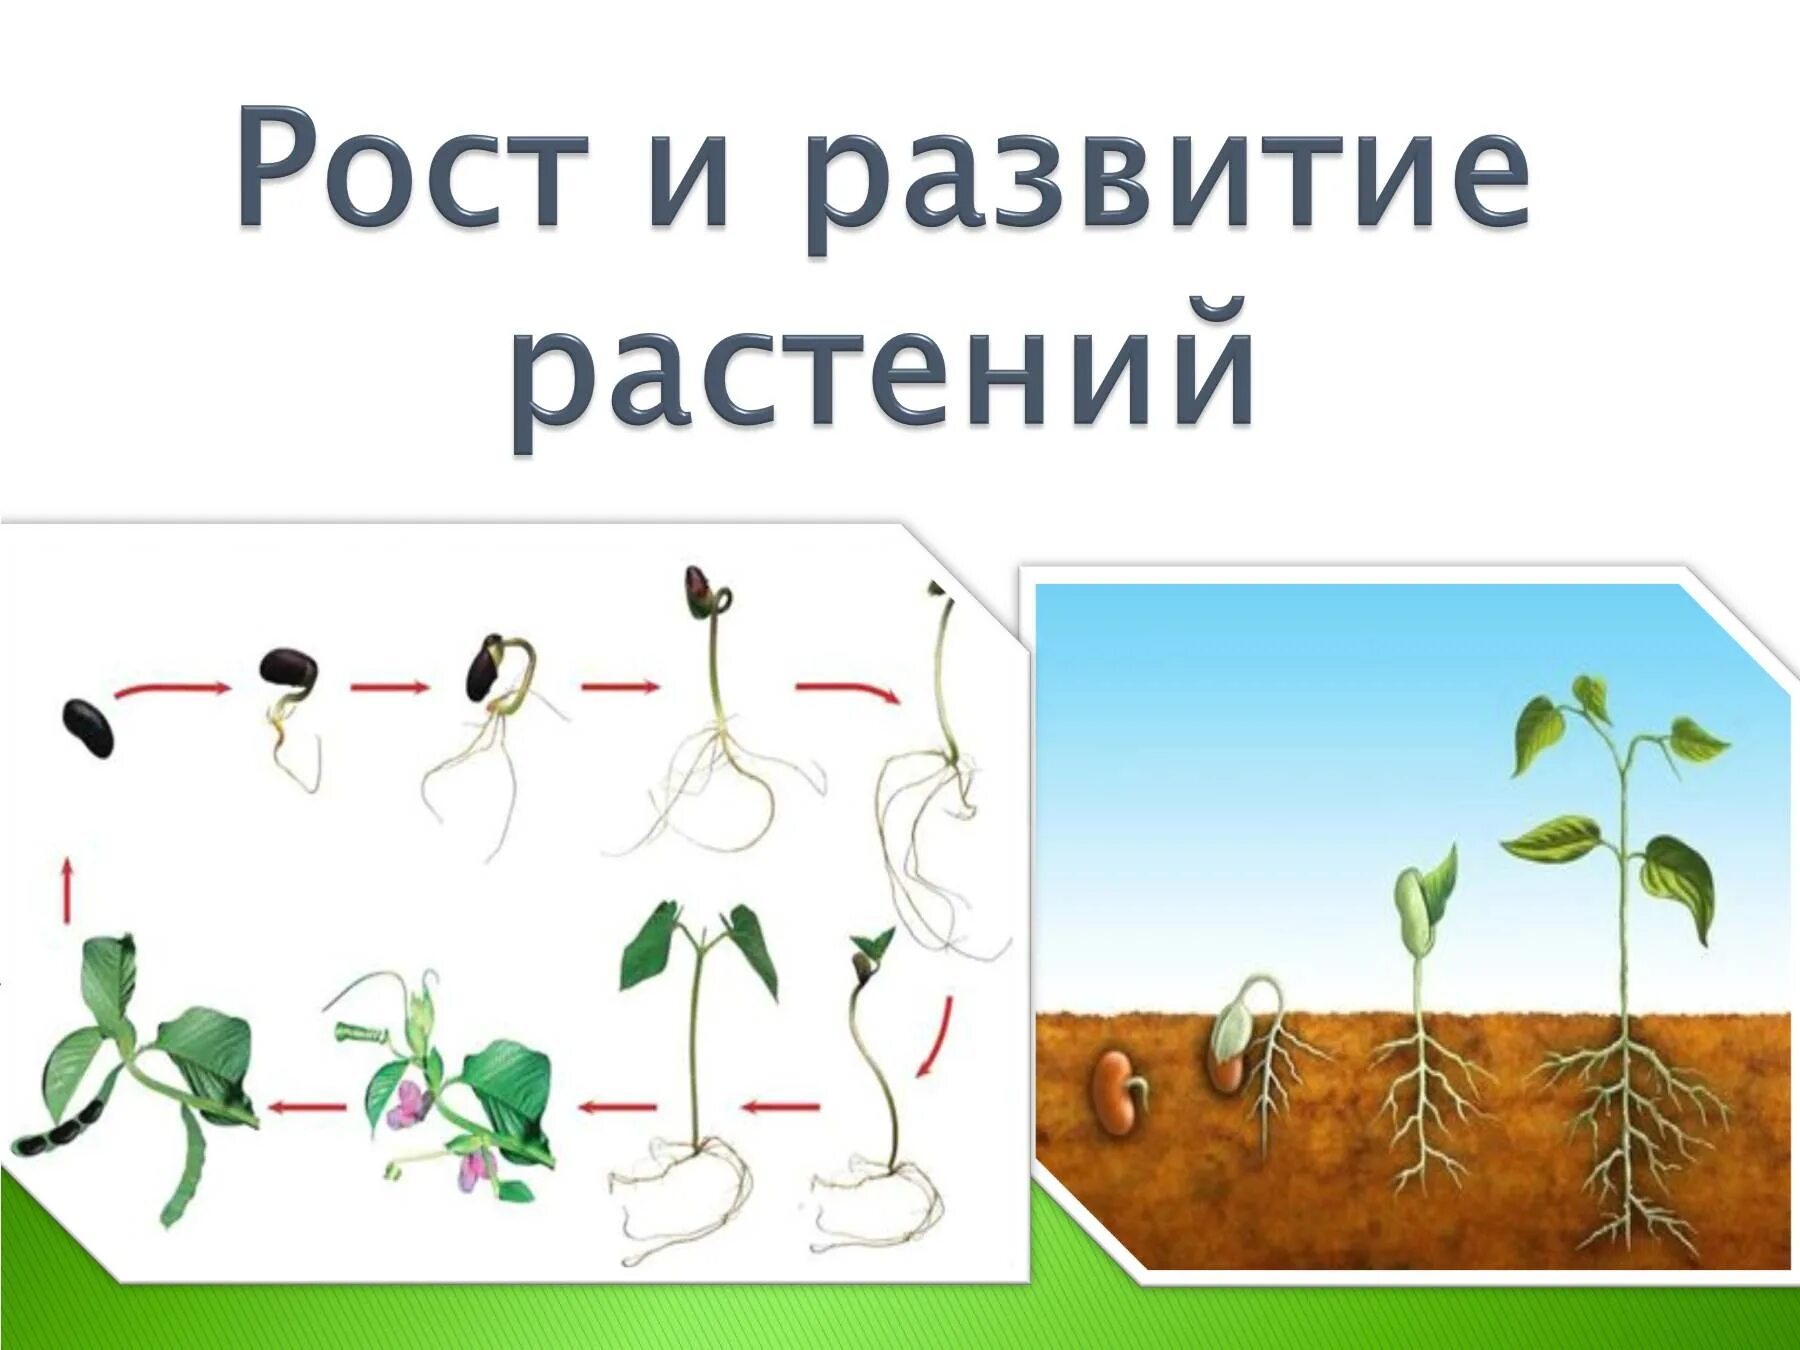 Как сохранить рост. Рост и развитие растений. Ьос т и развитие растений. Этапы роста цветка. Схема роста растения.